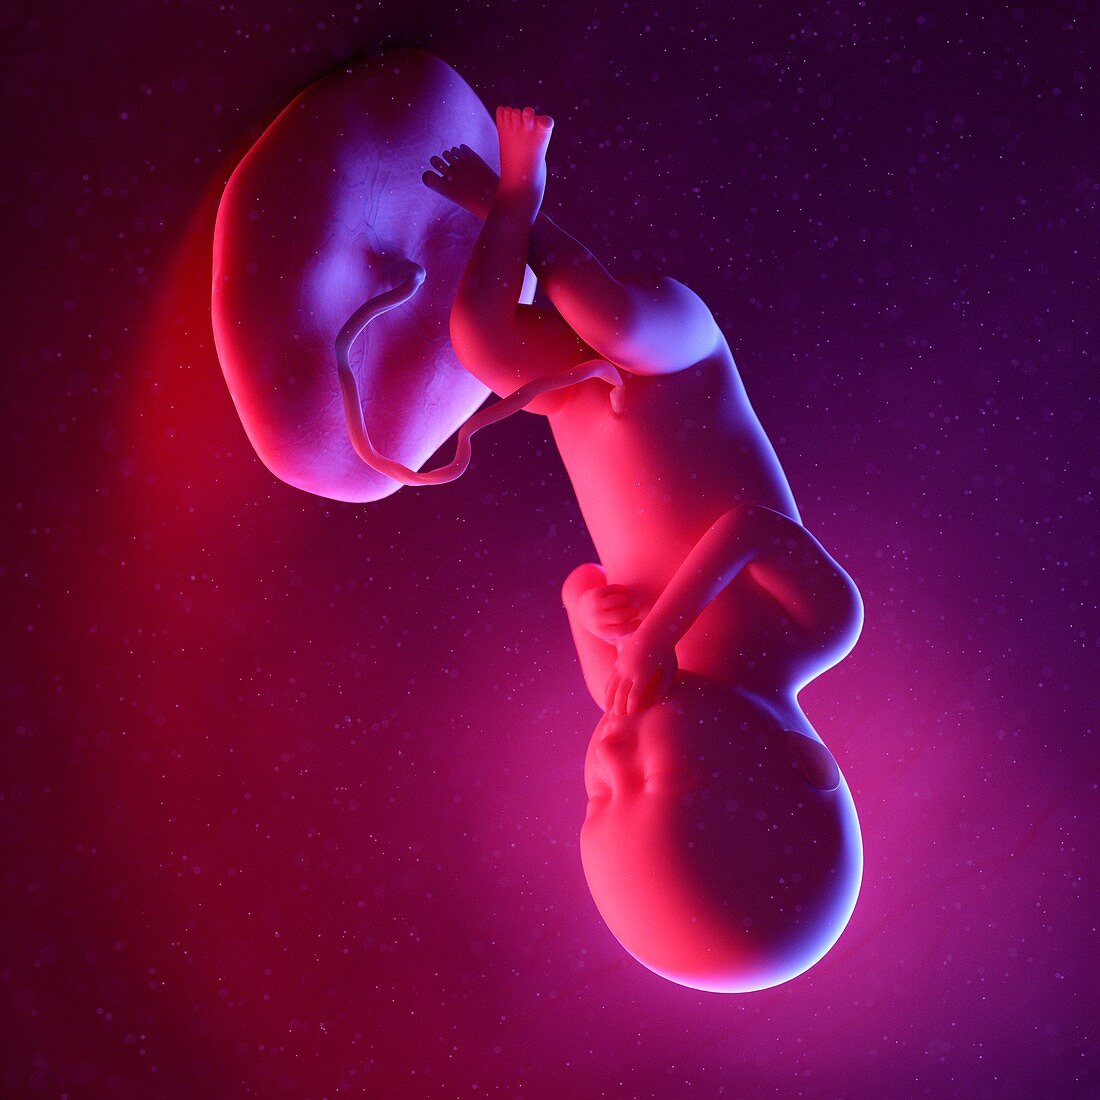 Fetus at week 36, illustration